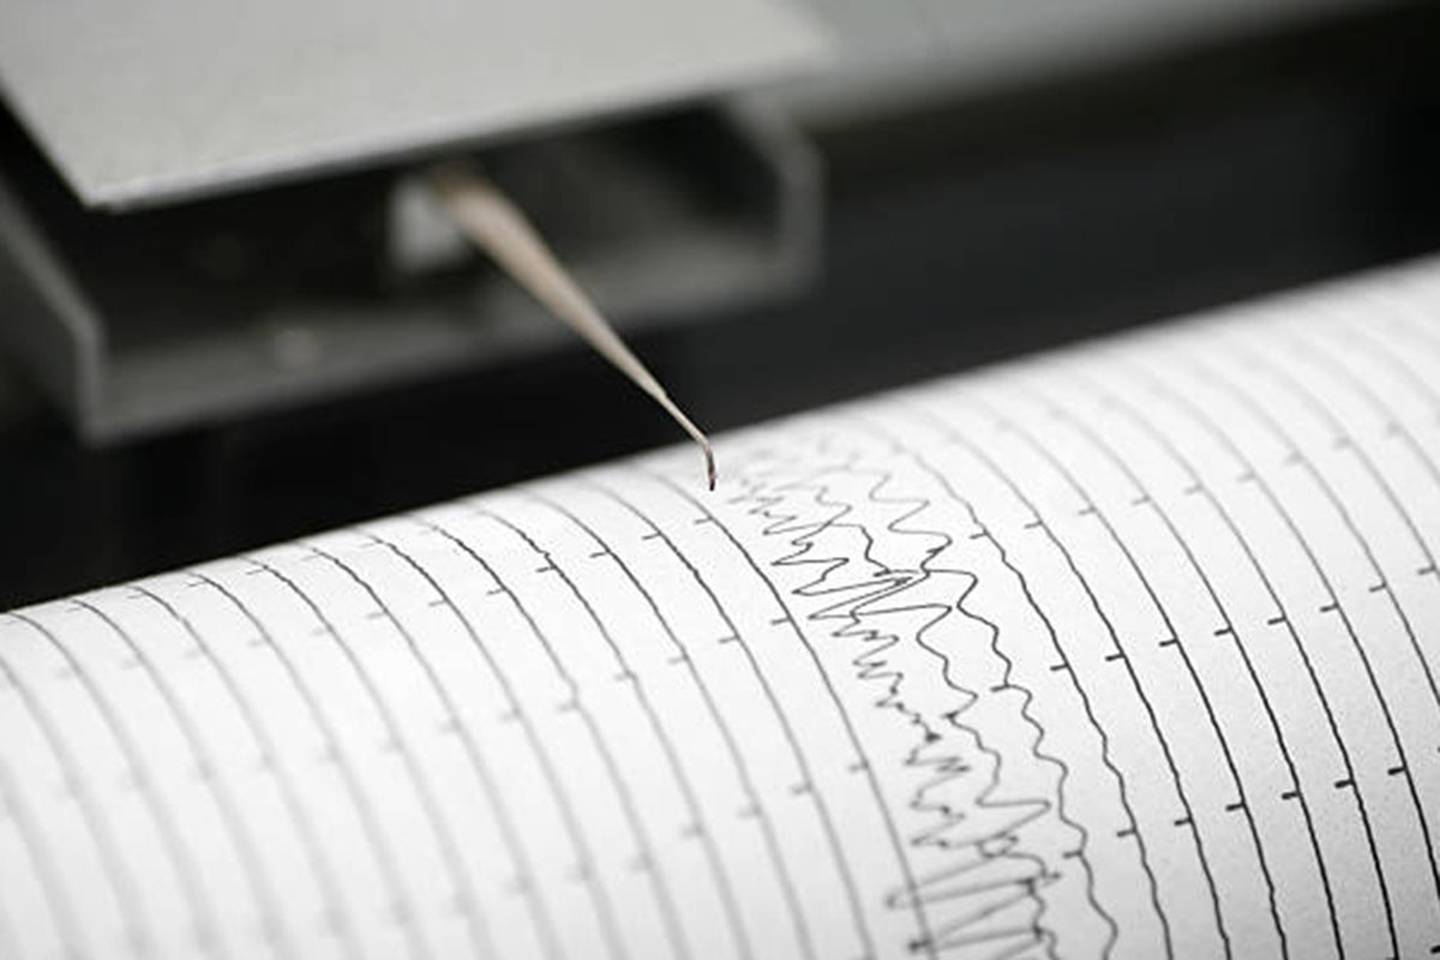 Sismógrafo, imagen referencial para notas de sismos en Chile.